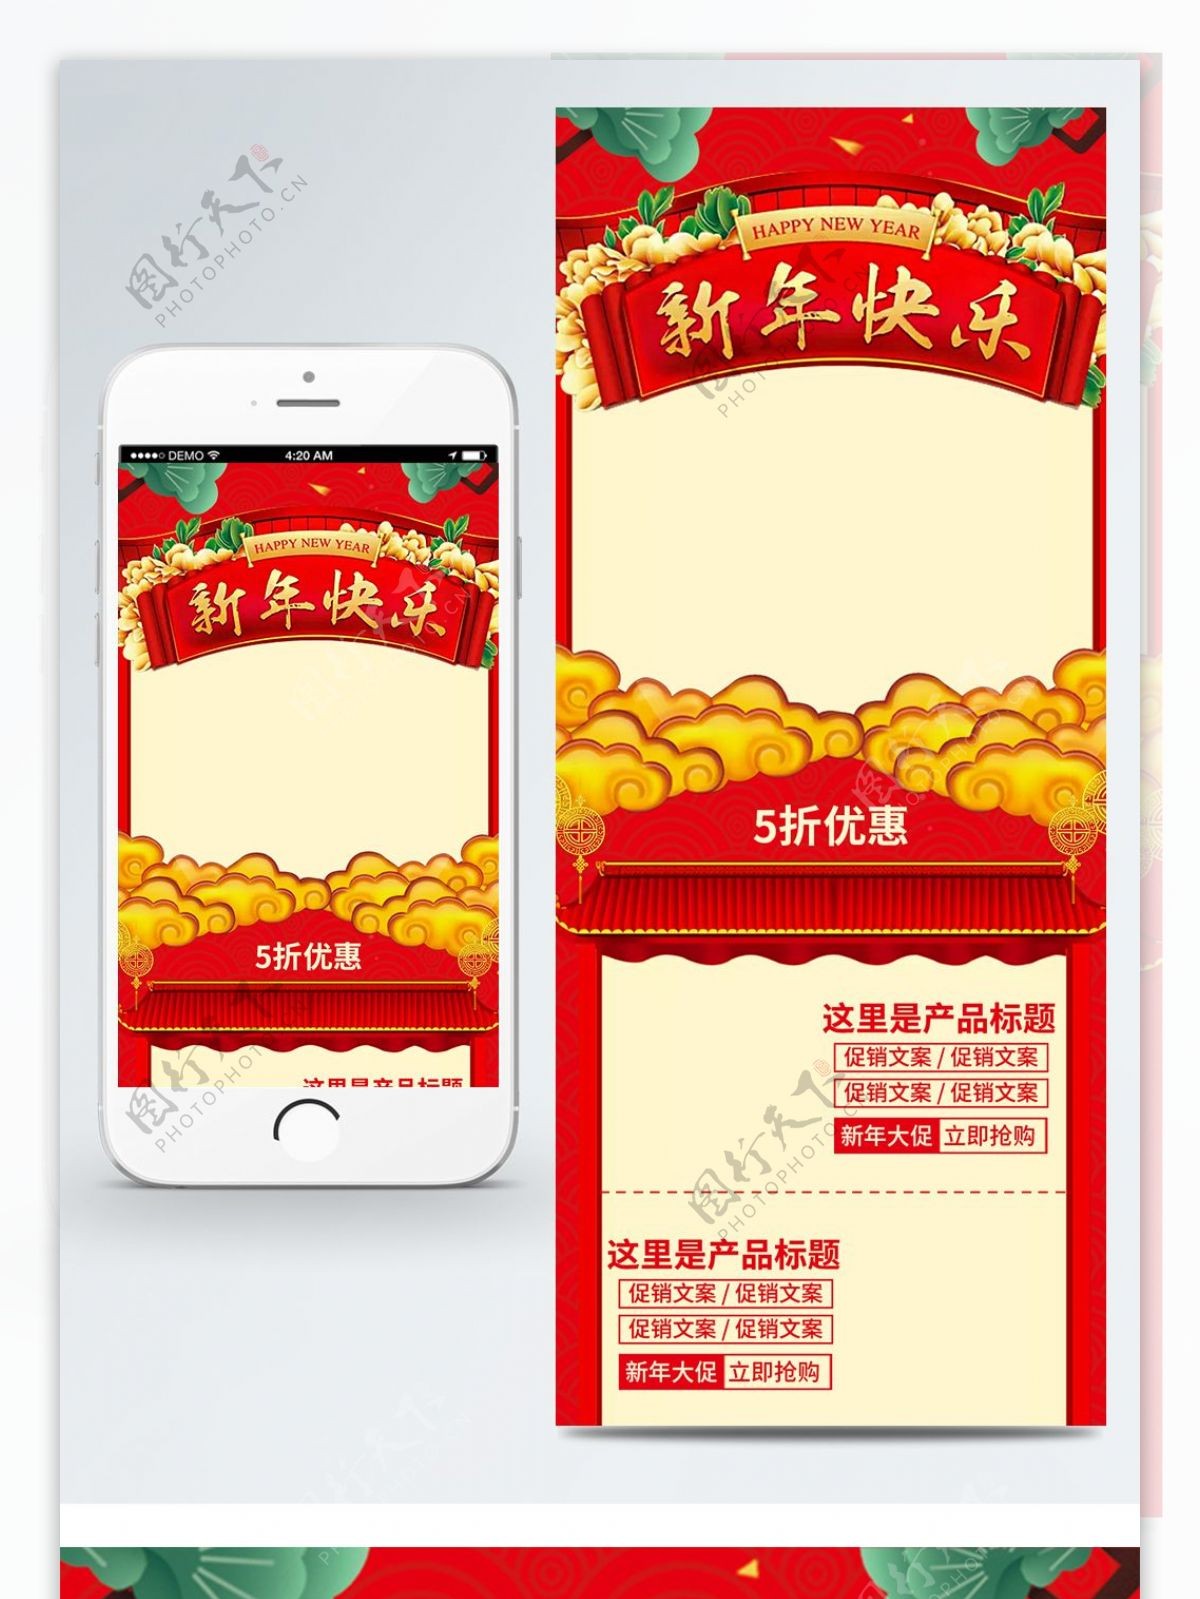 中国红2018新年春节优惠大促销手机首页